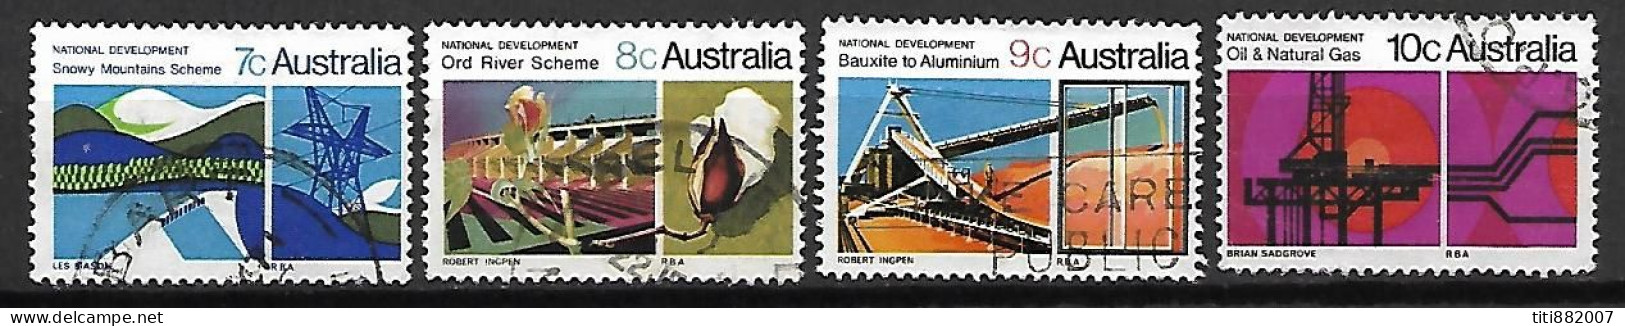 AUSTRALIE   -  1970 .  Série  4 Val. Oblitérés .  Développement National - Used Stamps